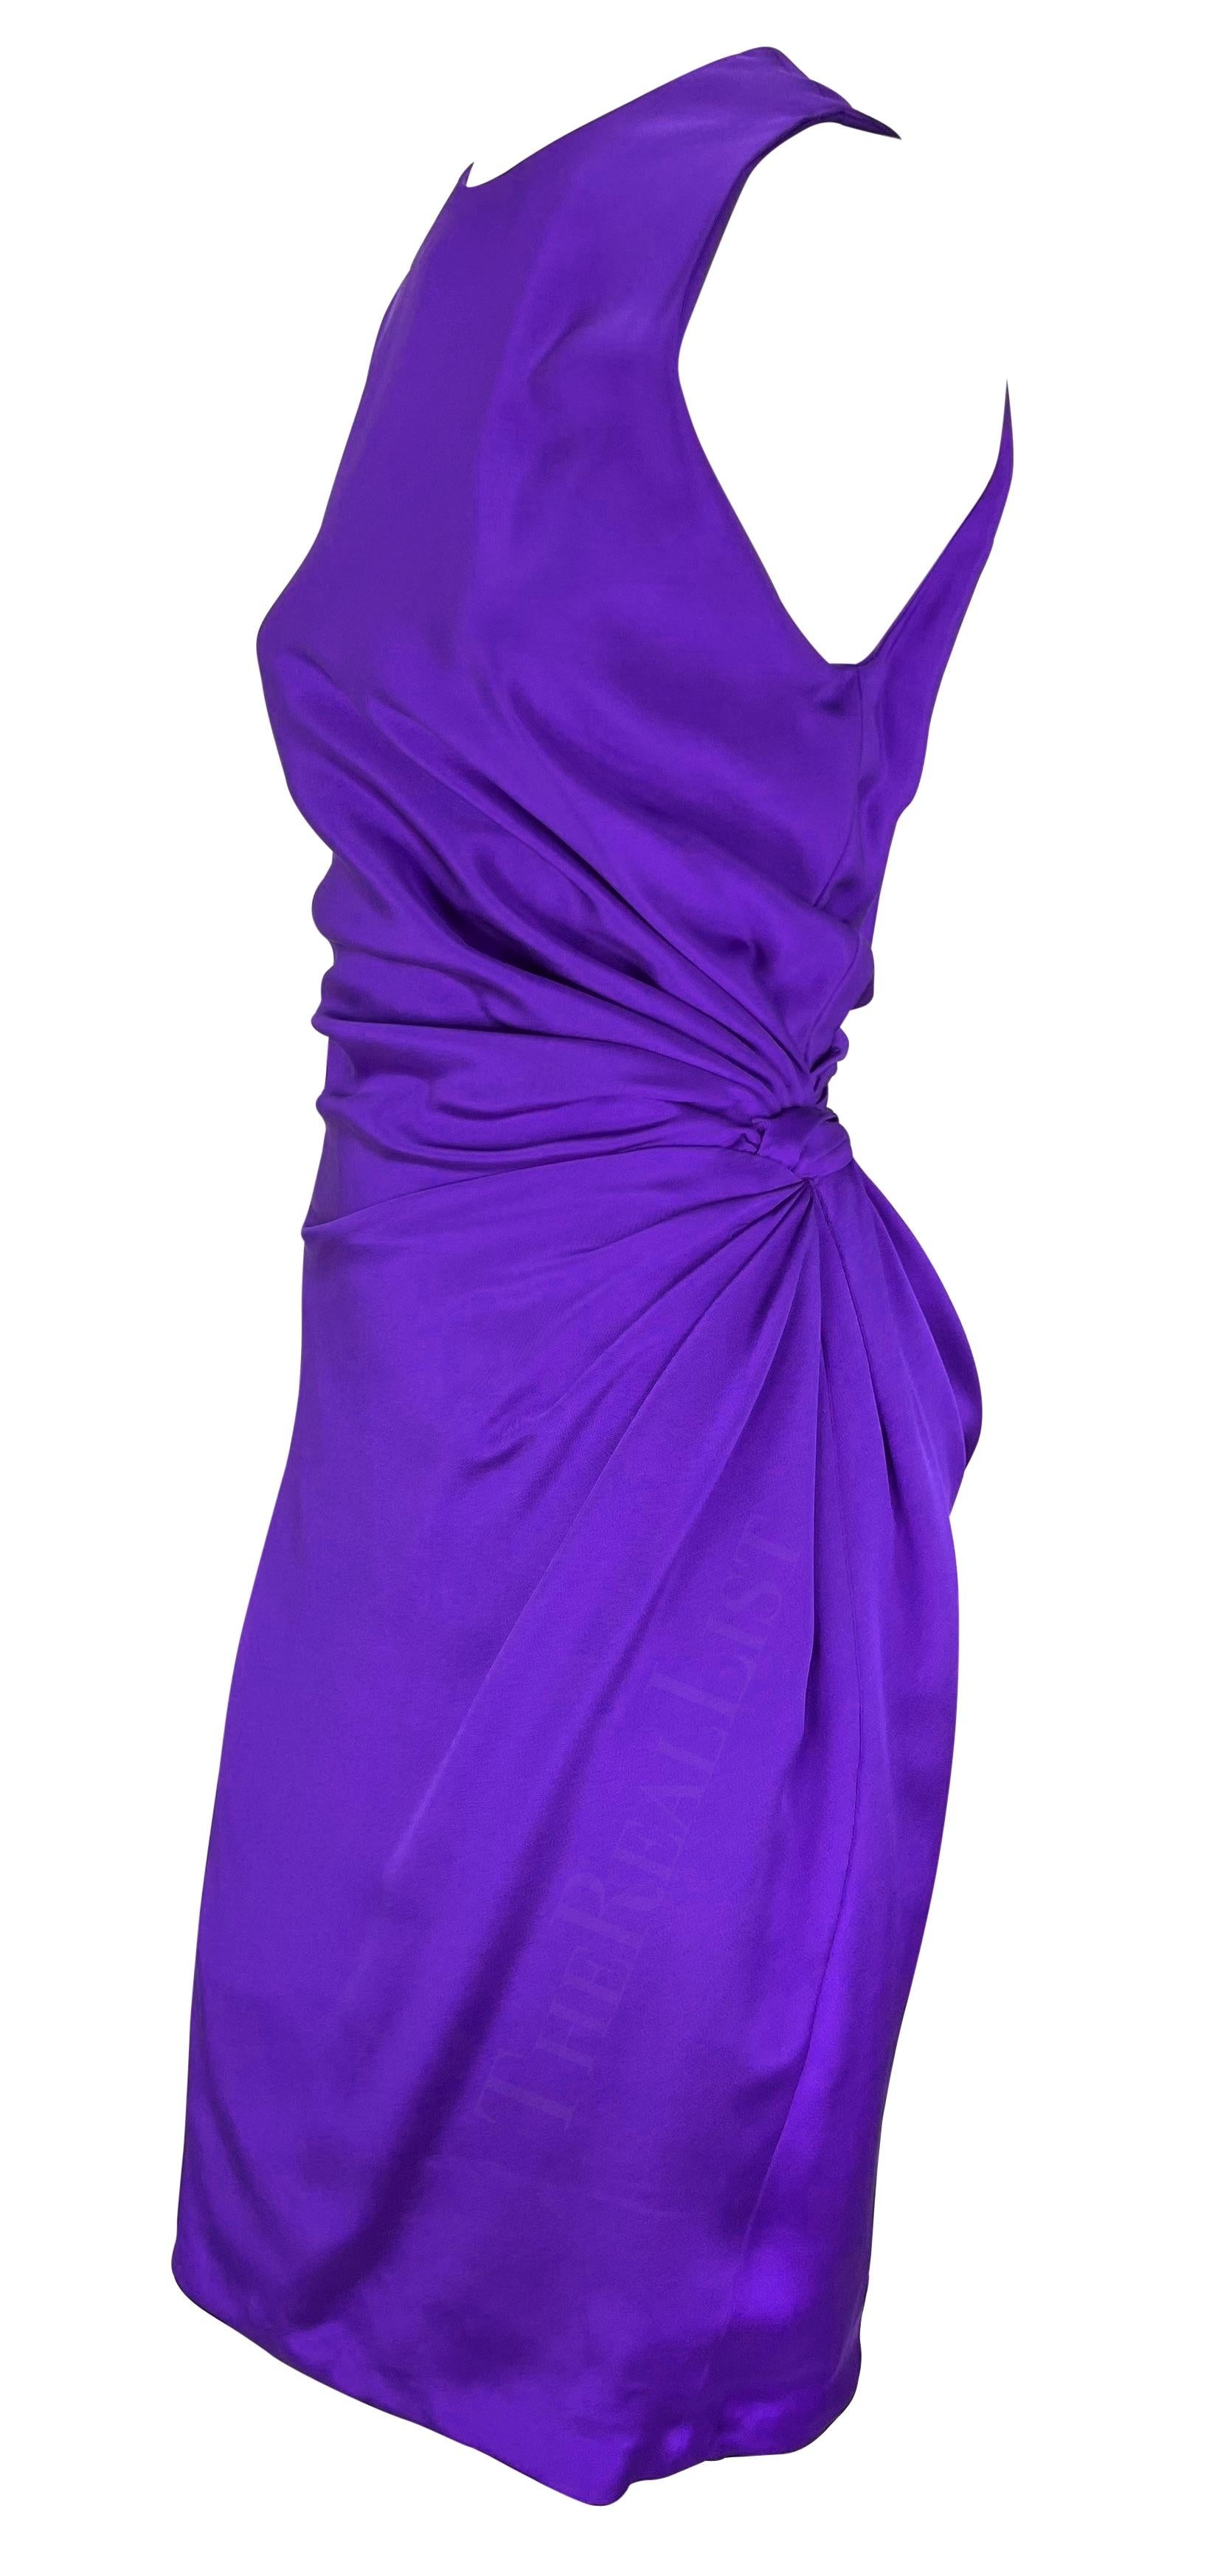 Présentation d'une robe midi Gianni Versace d'un violet éclatant, conçue par Gianni Versace. Issue de la collection printemps/été 1991, cette robe présente une encolure ras du cou et des fermetures à boutons sur une épaule. La robe est complétée par